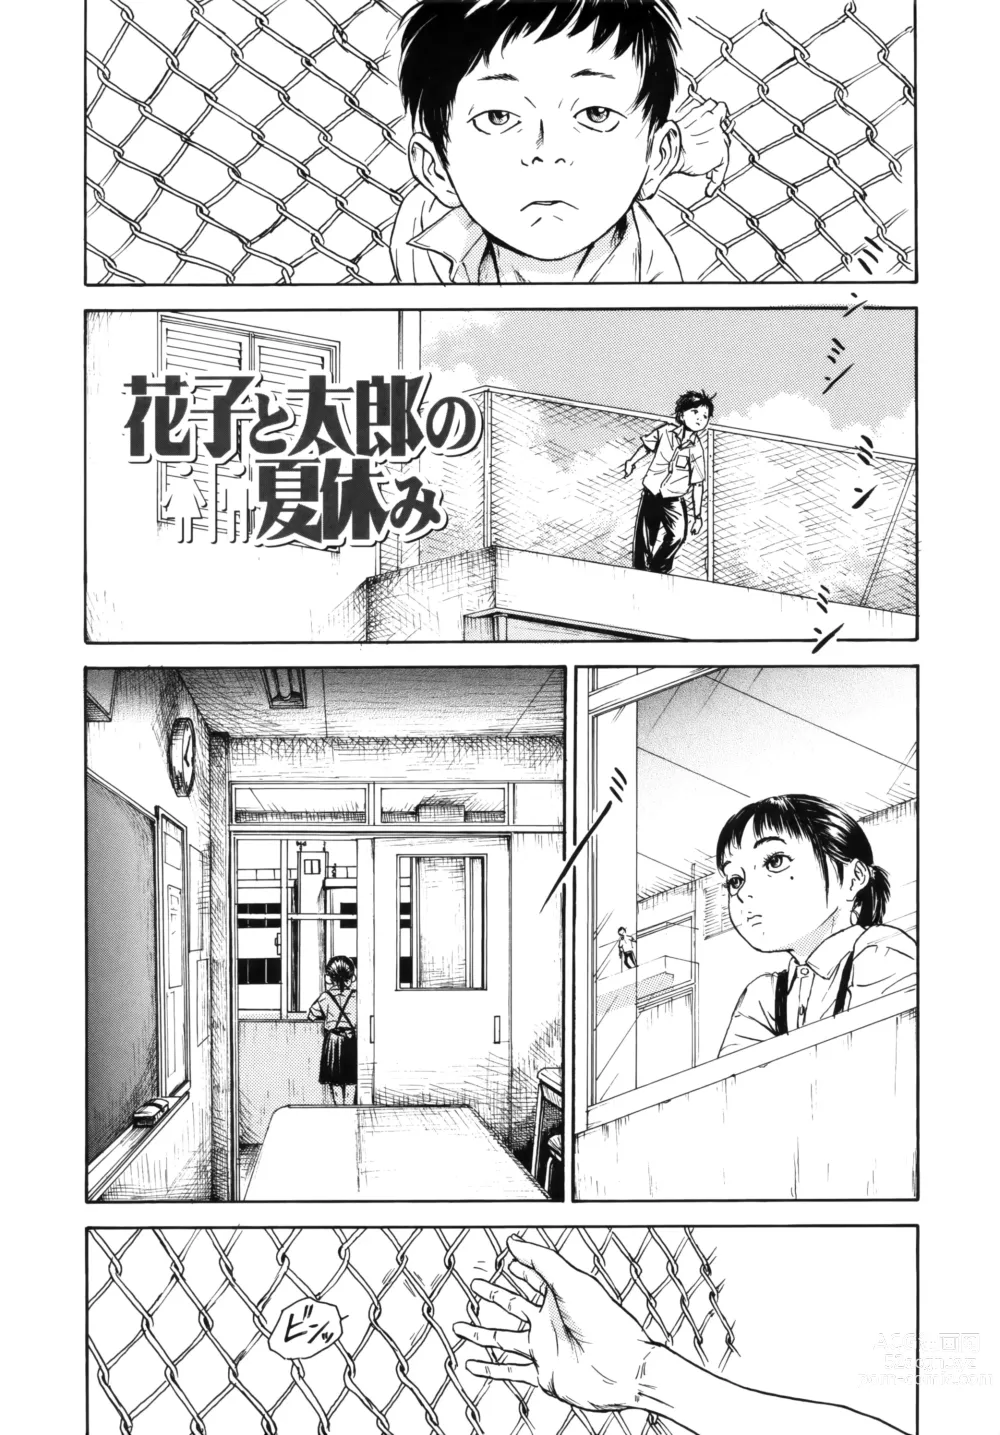 Page 2 of manga Hanako to Tarou no Natsuyasumi